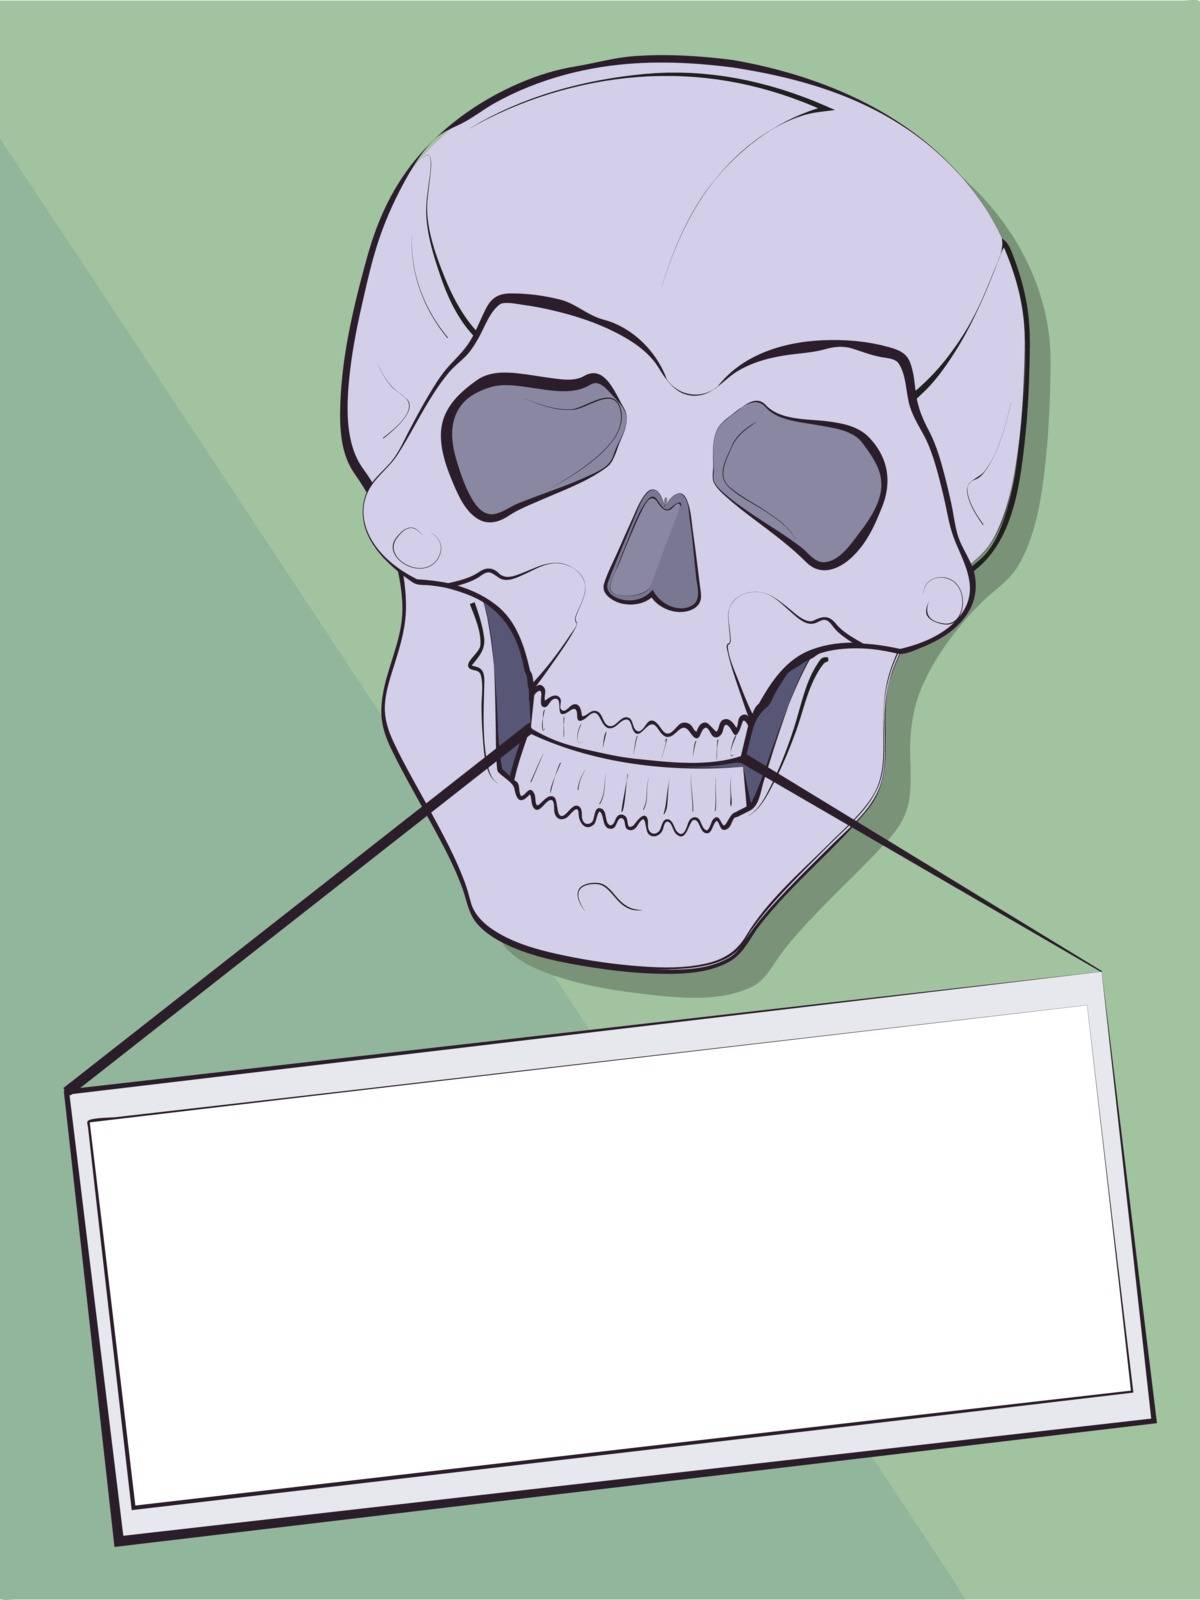 announcement in a teeth of a skull by nikolaich